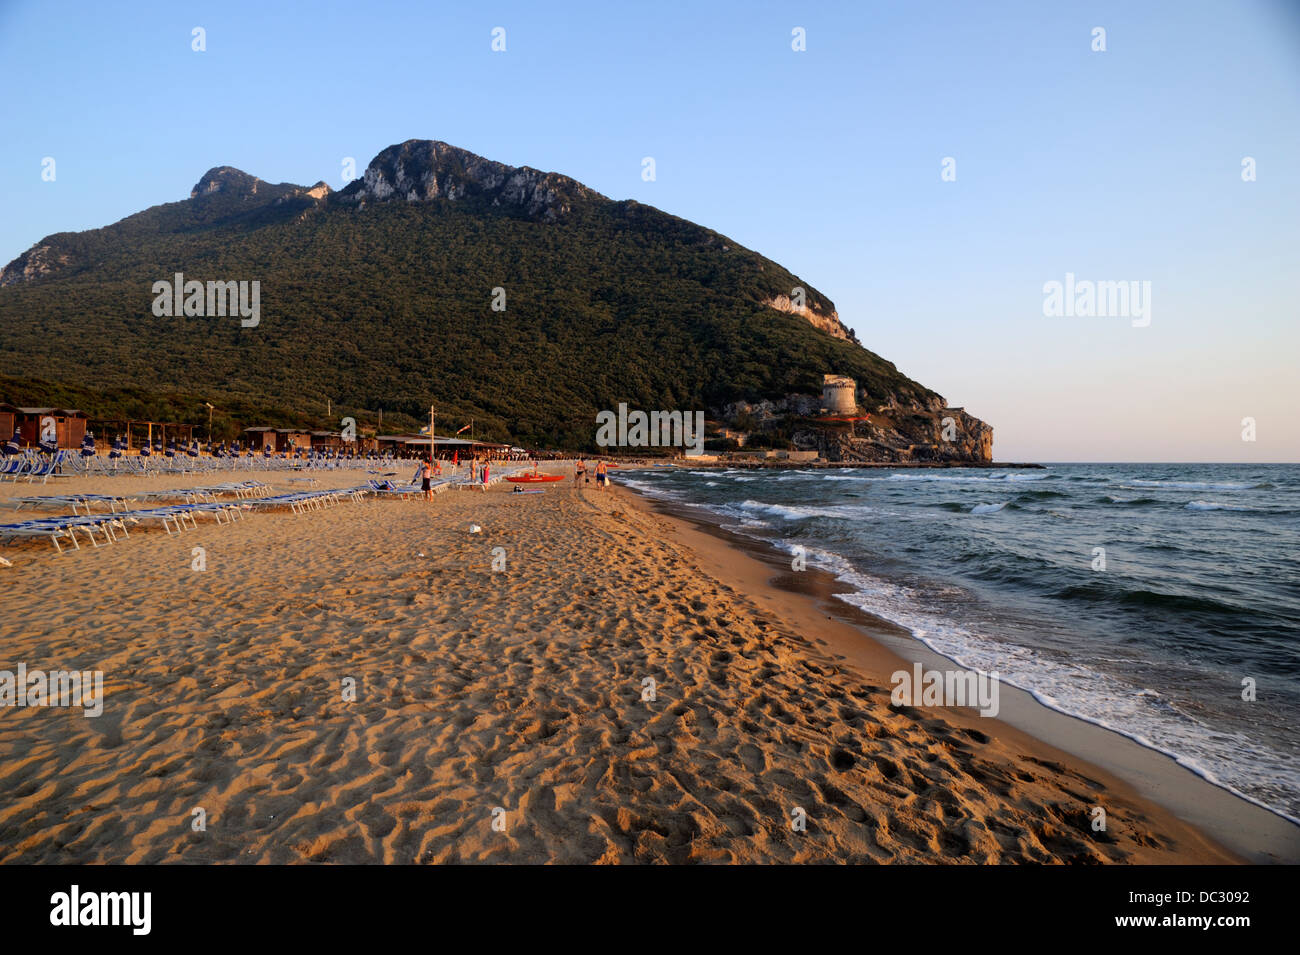 Spiaggia di sabaudia immagini e fotografie stock ad alta risoluzione - Alamy